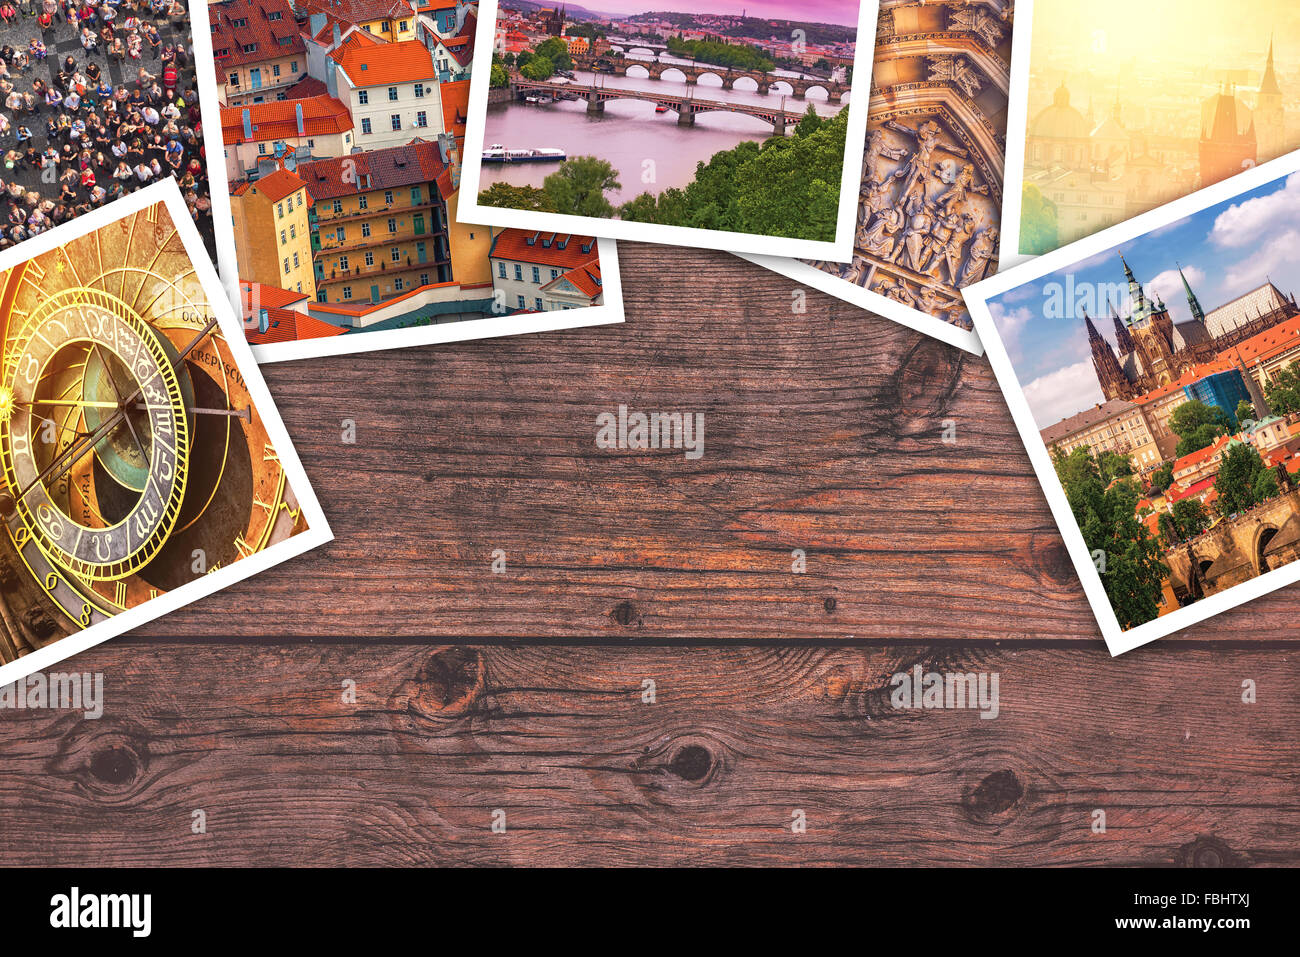 Praga photo collage, turistica immagine istantanea della Repubblica ceca capitale sulla scrivania di legno come copia di spazio. Foto Stock